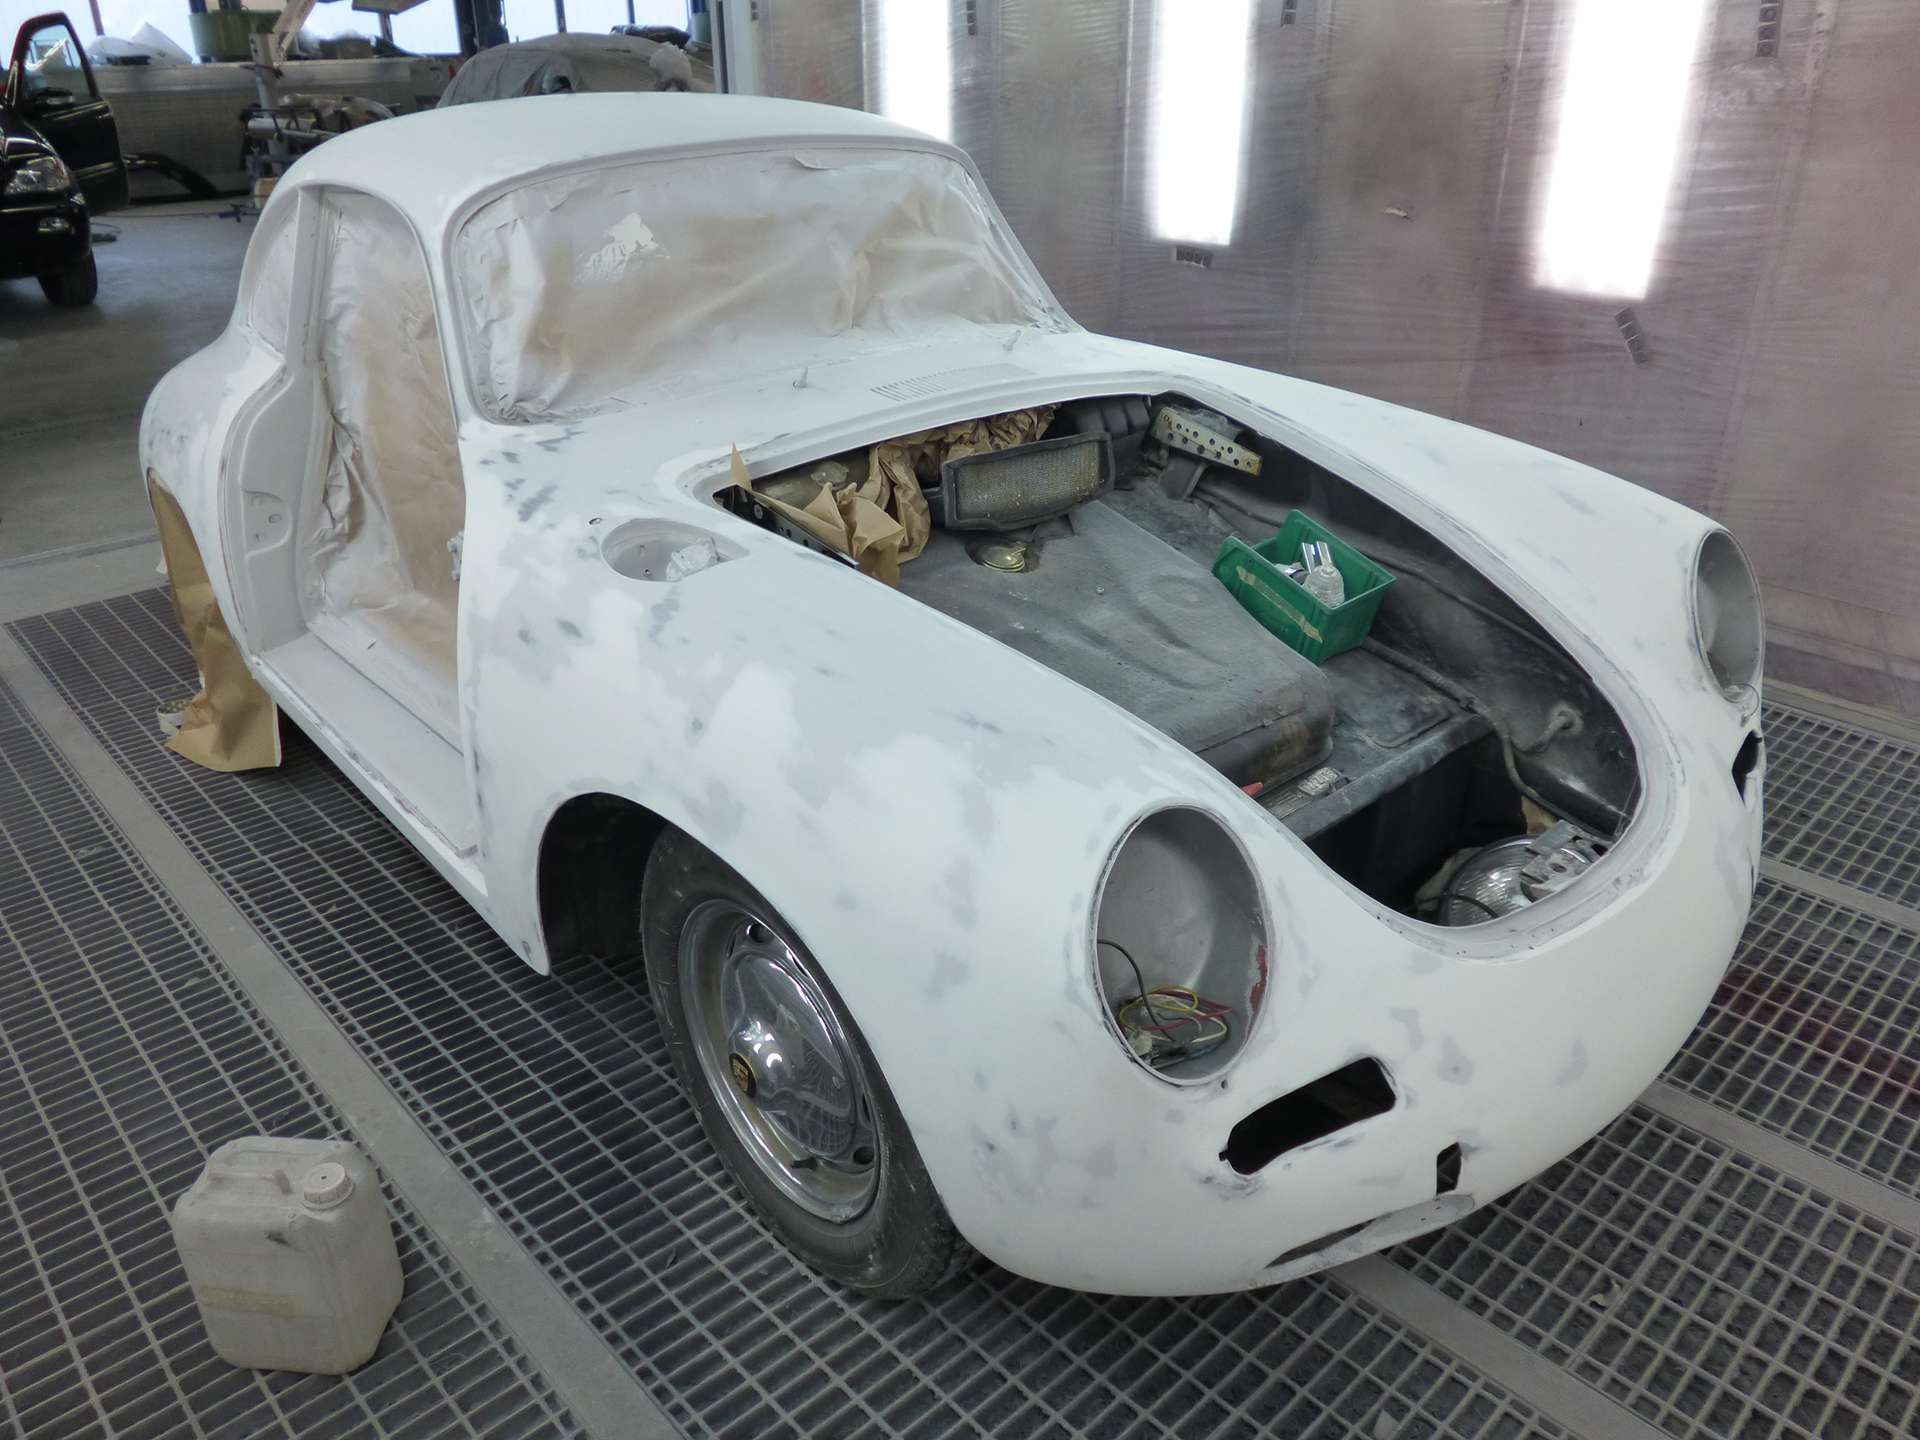 Restauration d'une ancienne voiture Porsche dans la cabine de gyclage de la carrosserie Binggeli